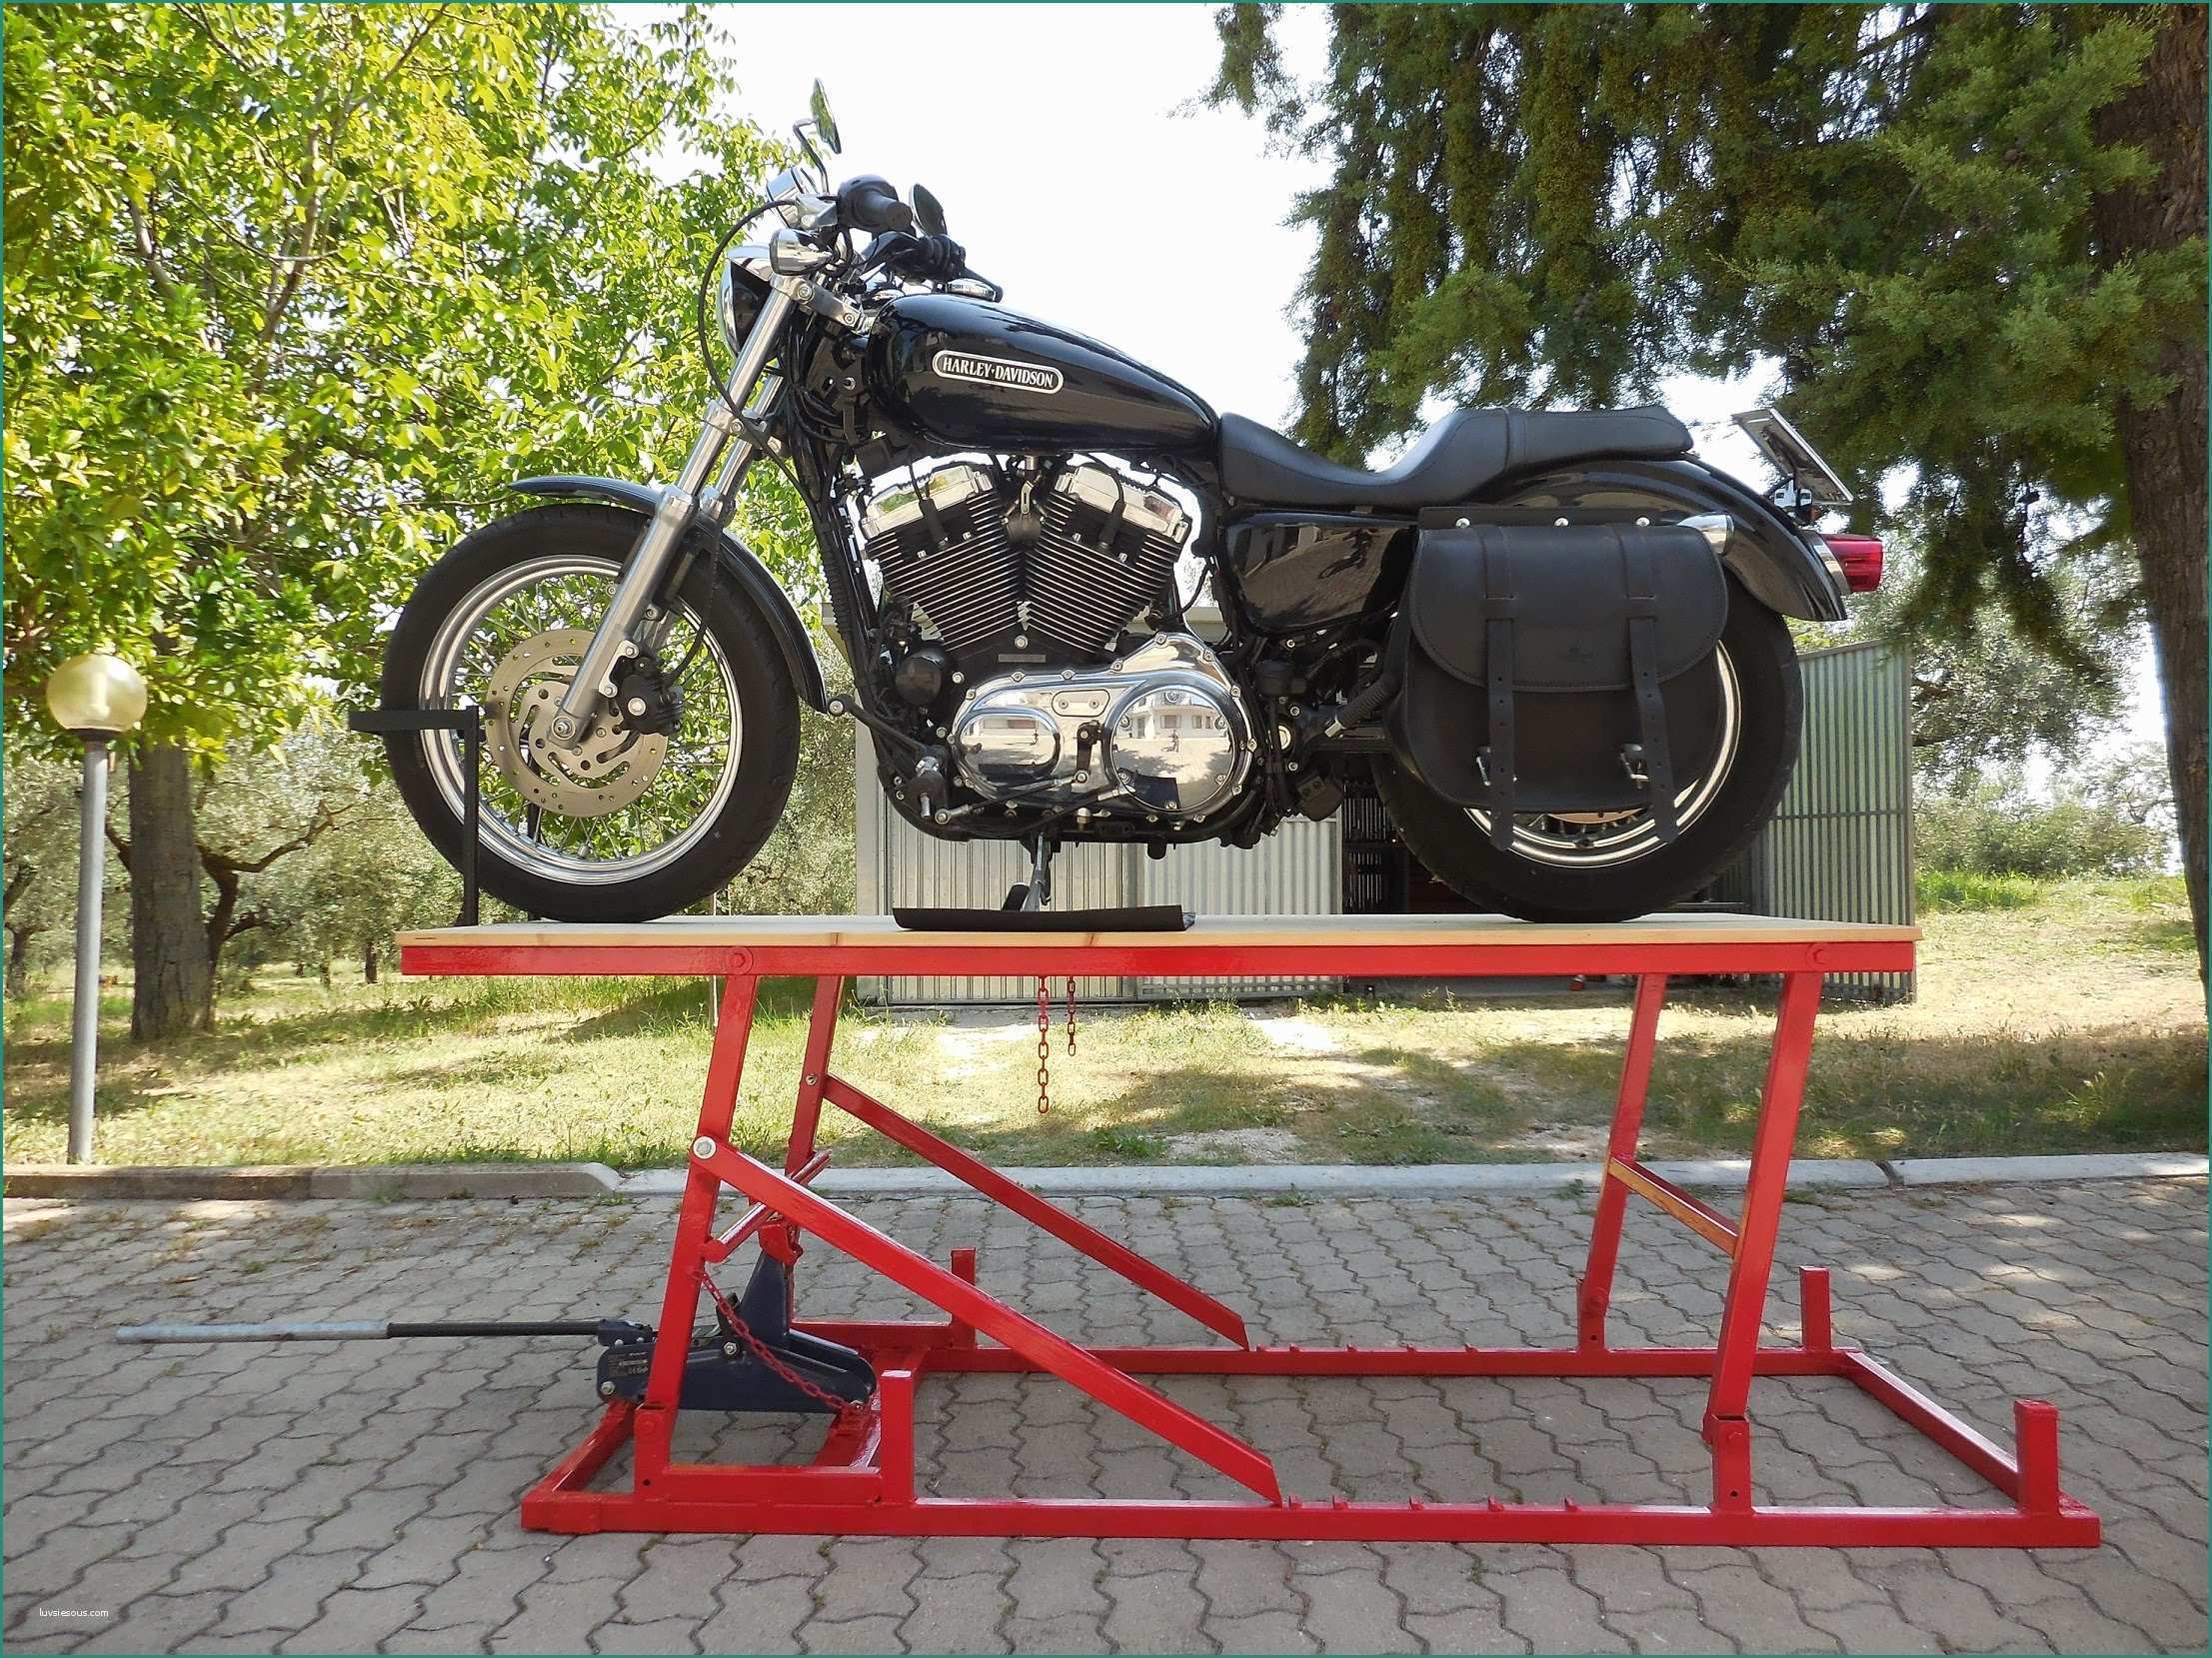 Ponte sollevatore Per Moto E Alza Moto Harley Davidson – Idea Di Immagine Del Motociclo